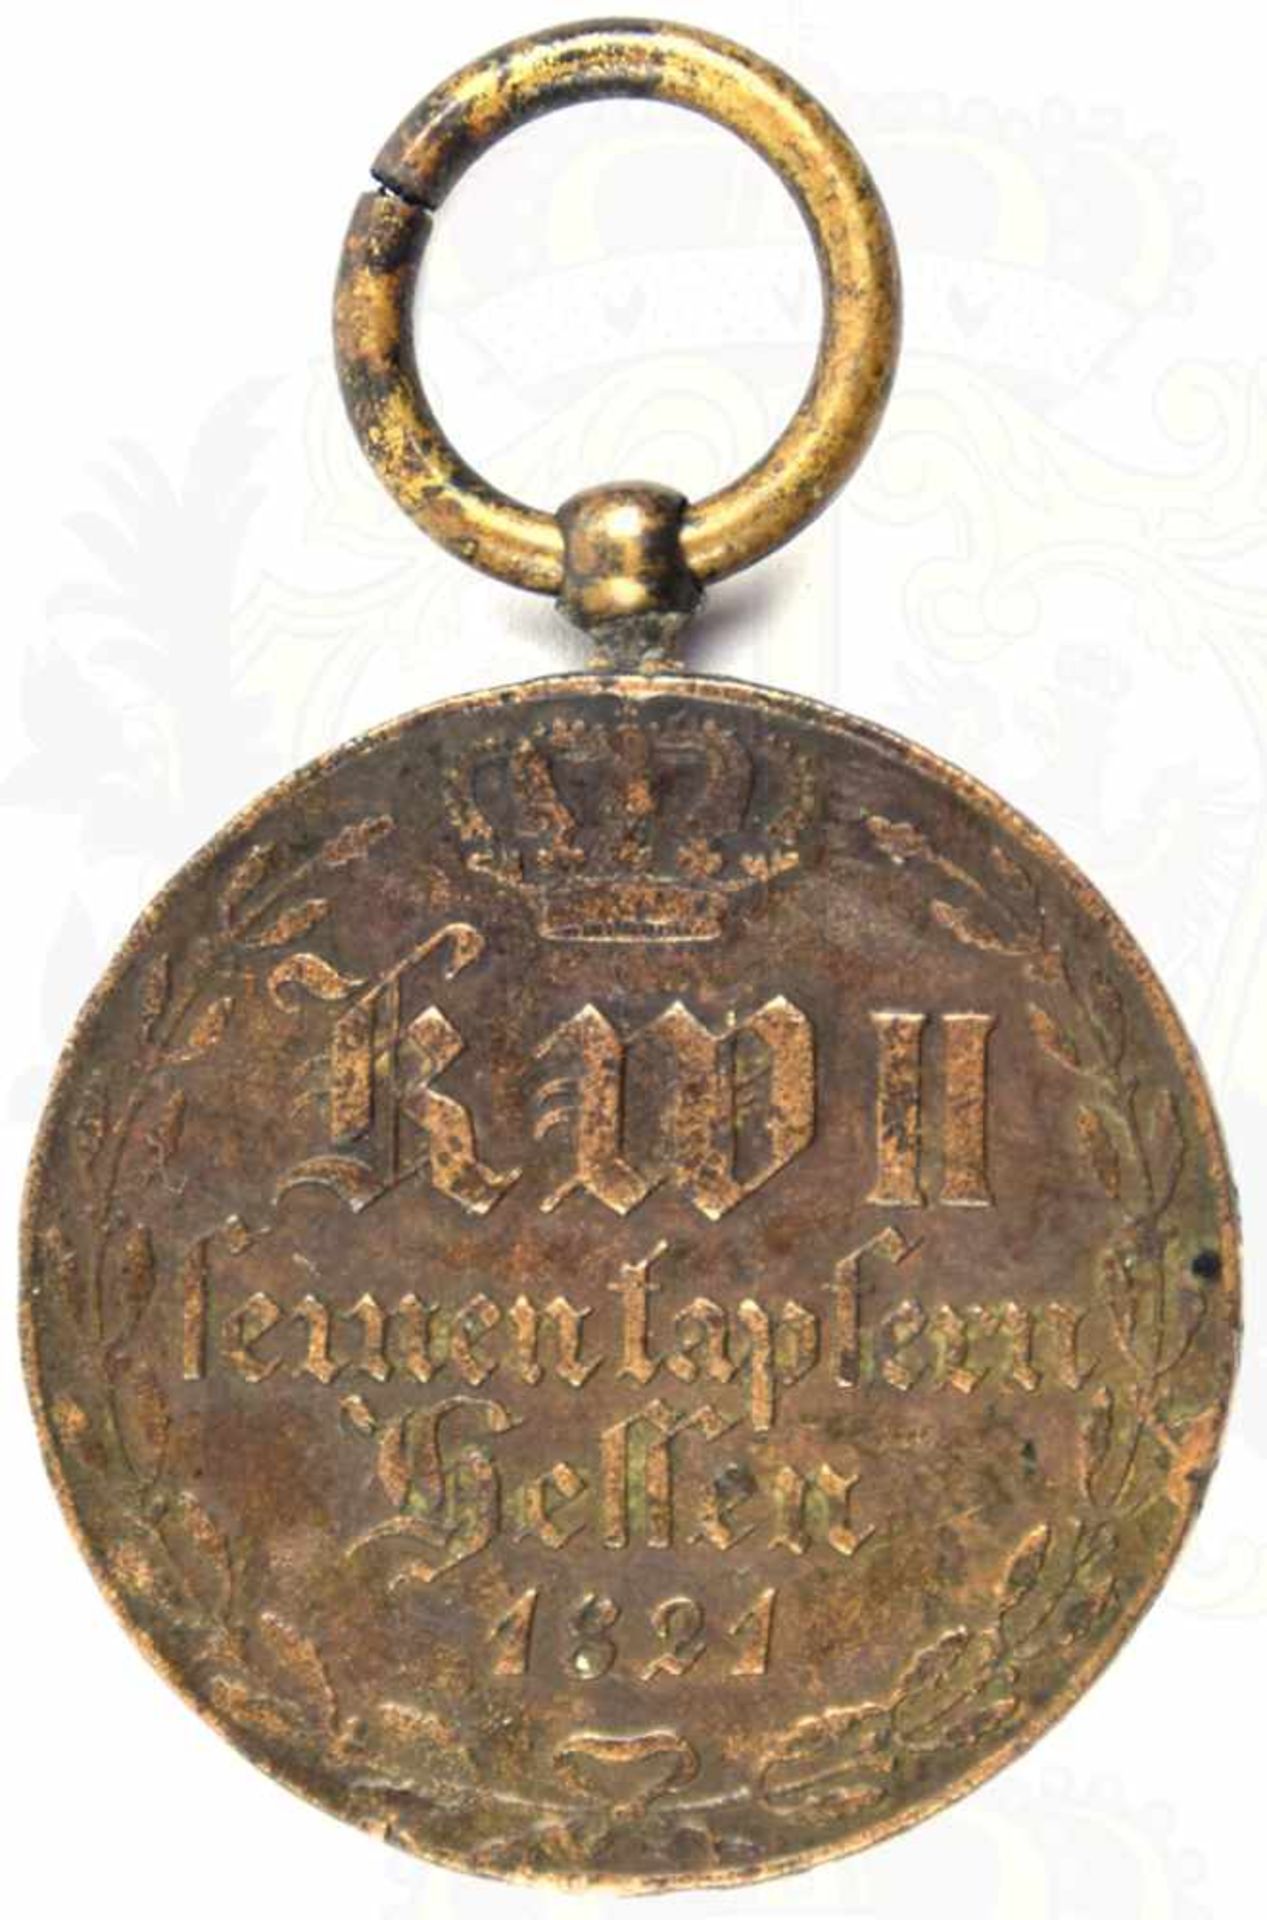 KRIEGSDENKMÜNZE 1814/1815 FÜR KÄMPFER, Bronze, patiniert, Randschrift „Aus erobertem Geschütz“,